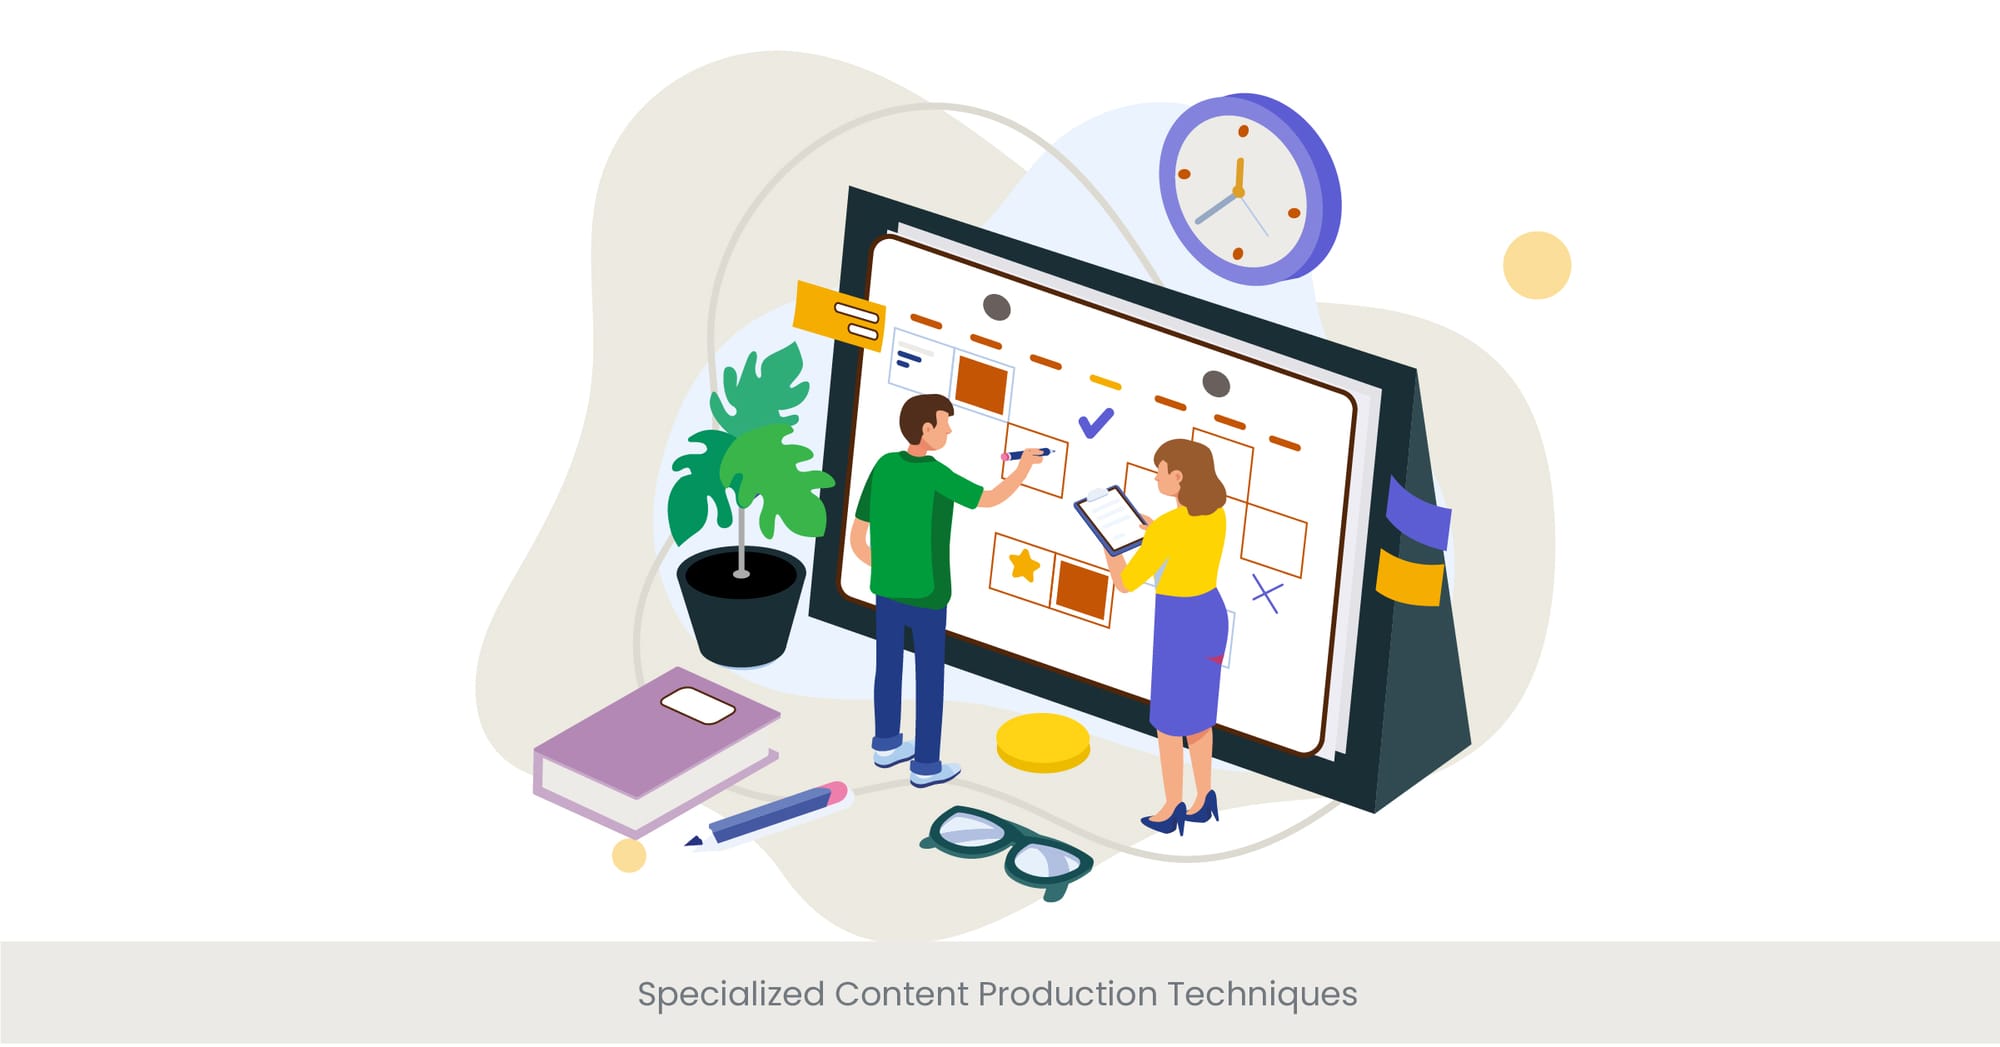 Specialized Content Production Techniques